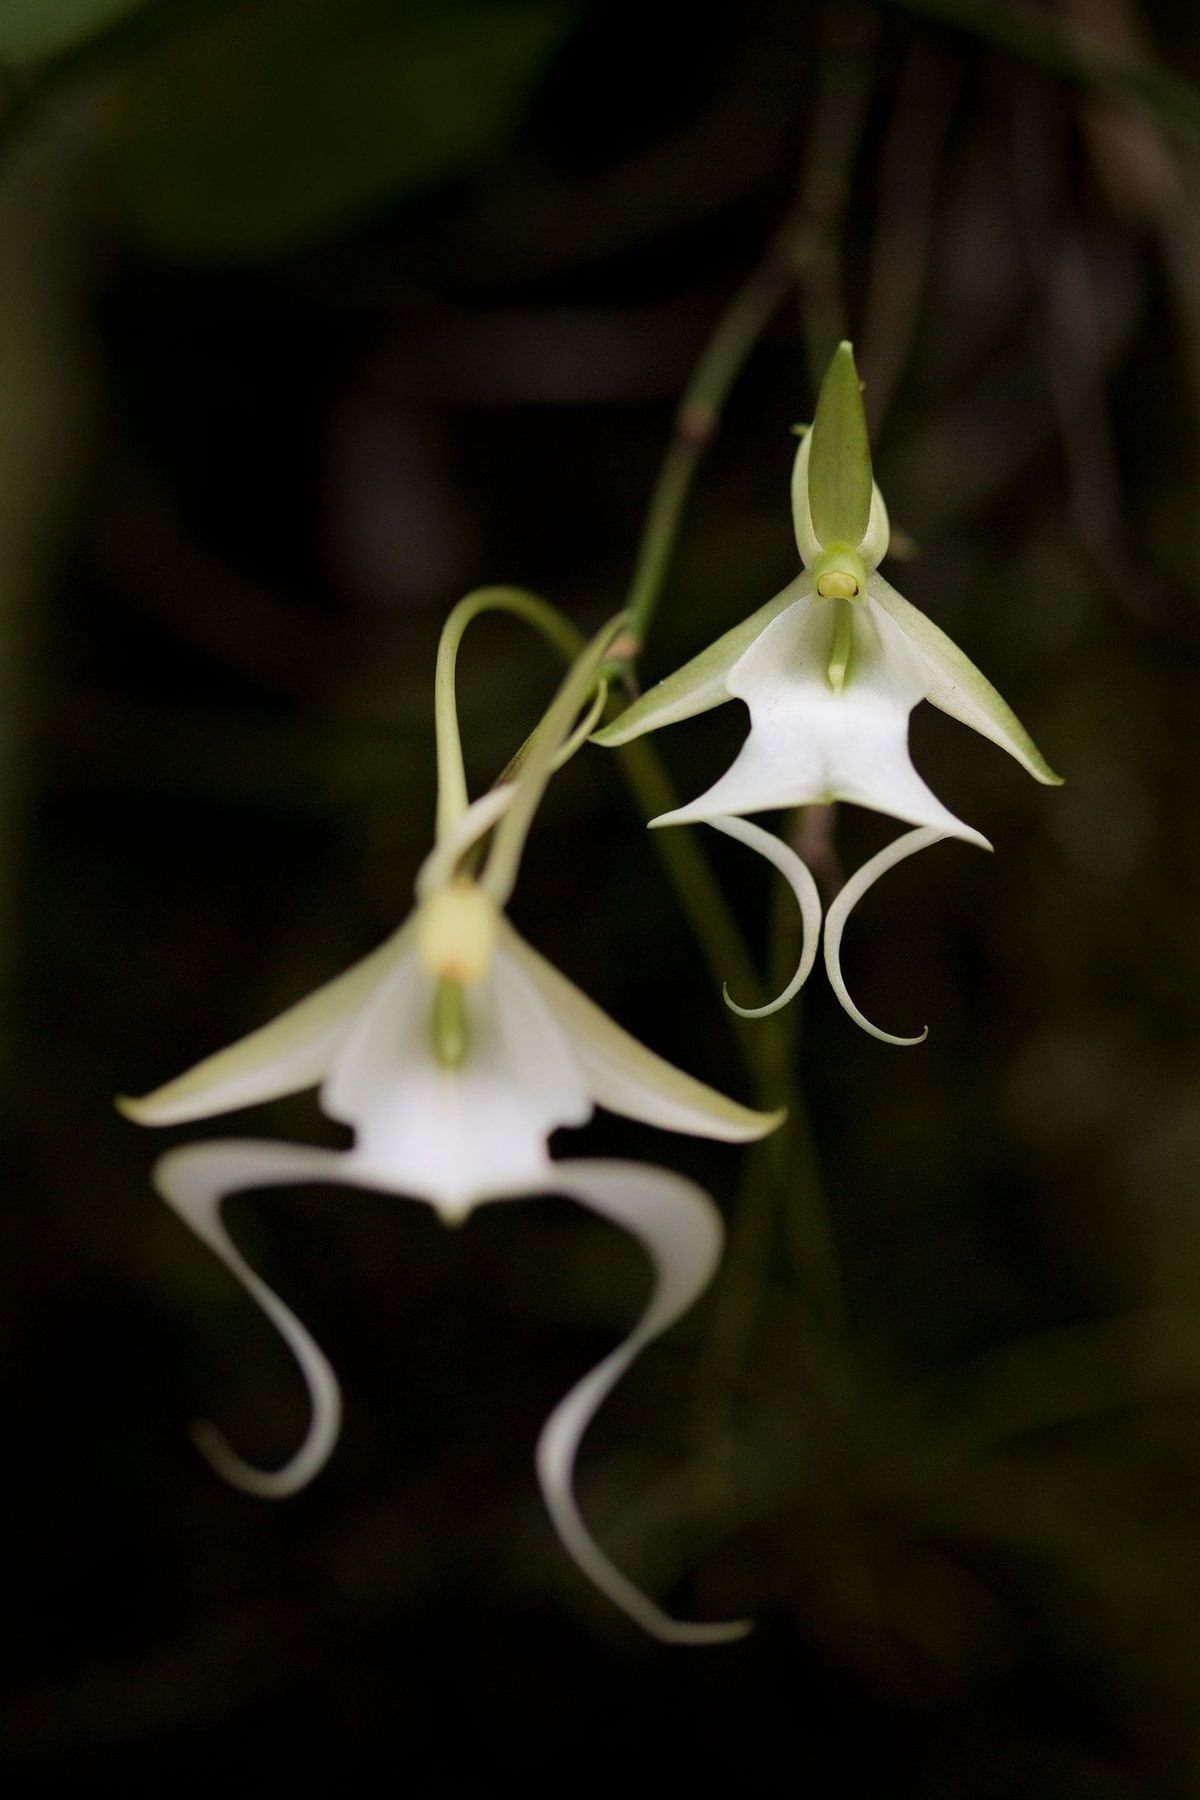 De zeldzame Amerikaanse spookorchidee groeit vooral in drie beschermde natuurgebieden in het zuiden van Florida Zijn adembenemend mooie bloemen betoveren mensen in de hele wereld